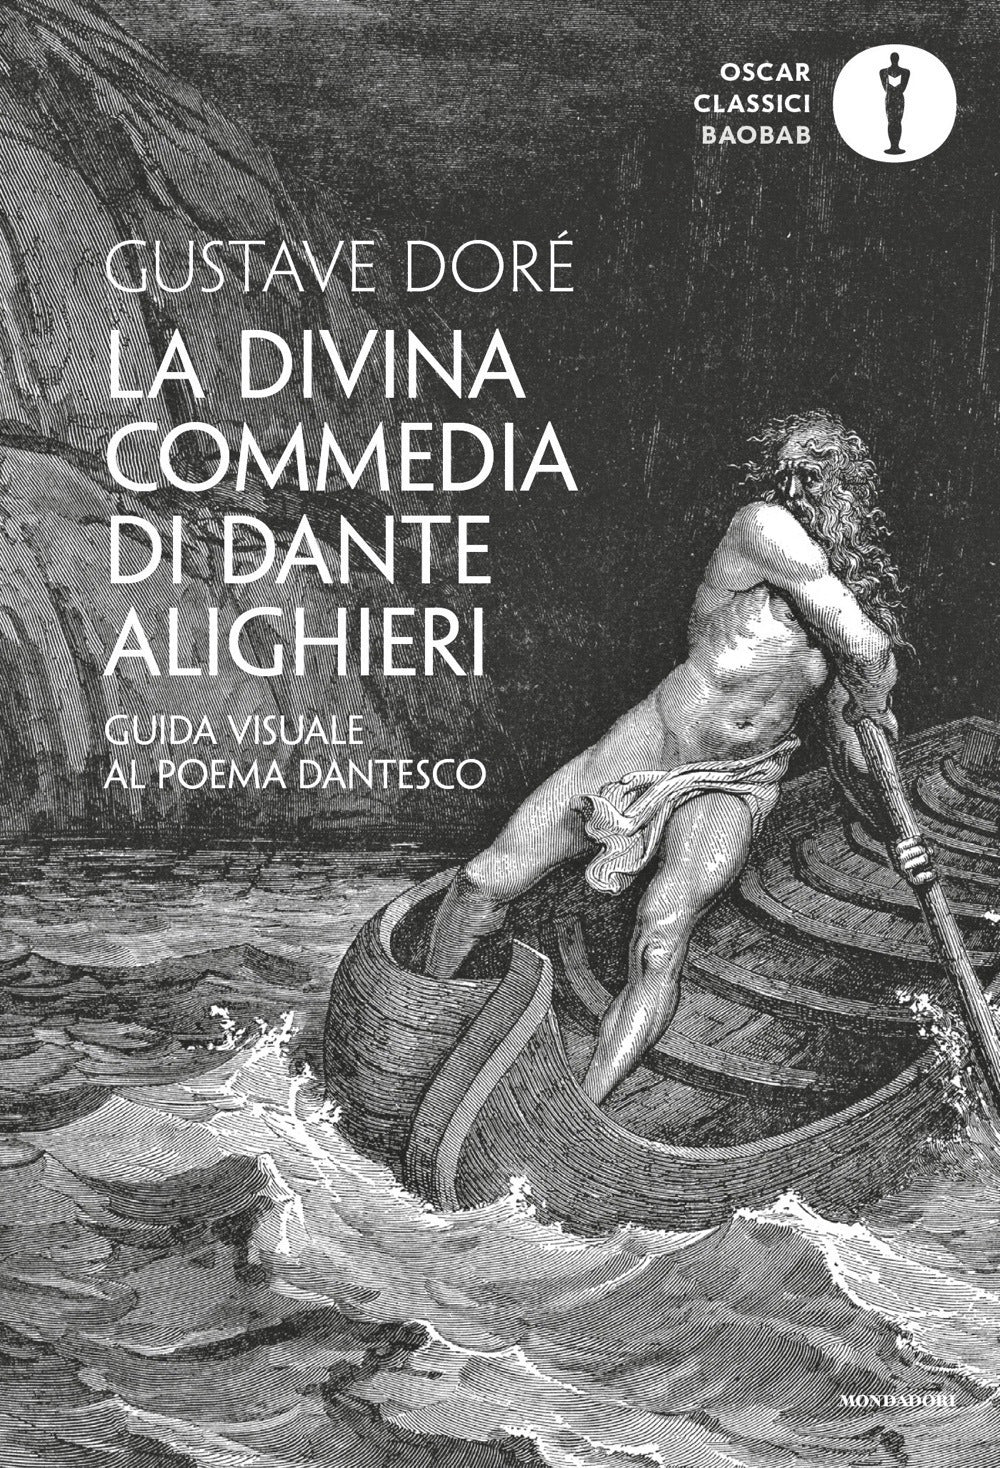 La Divina Commedia di Dante Alighieri. Guida visuale al poema dantesco. Ediz. illustrata.